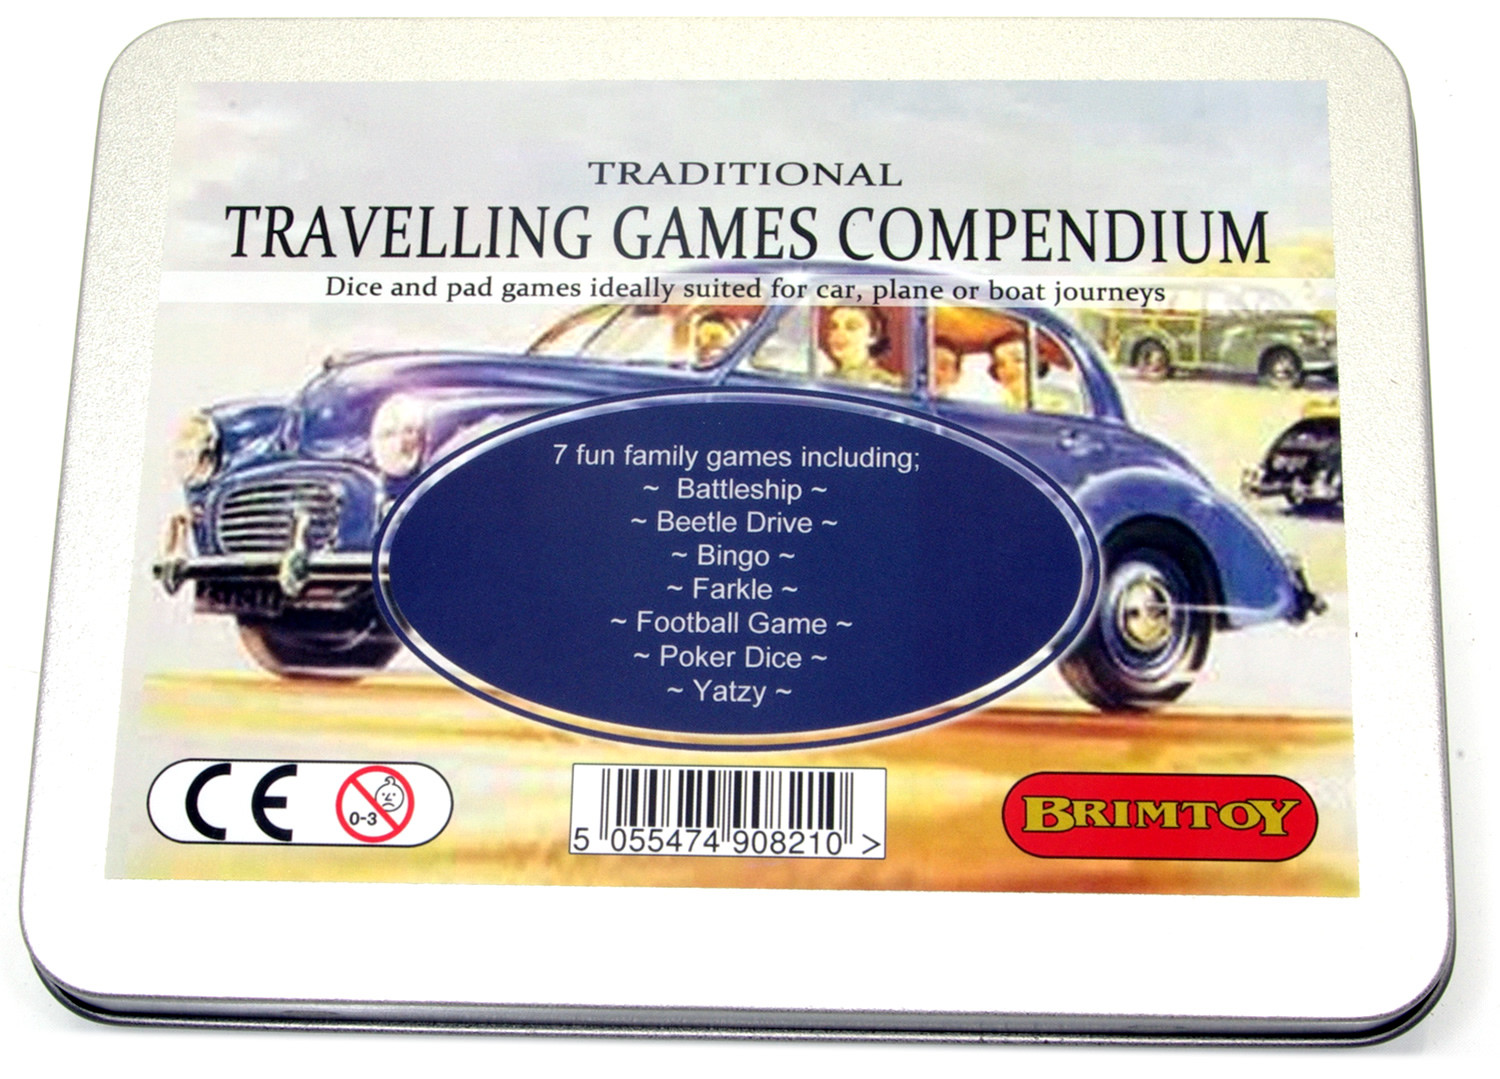 Travelling games compendium